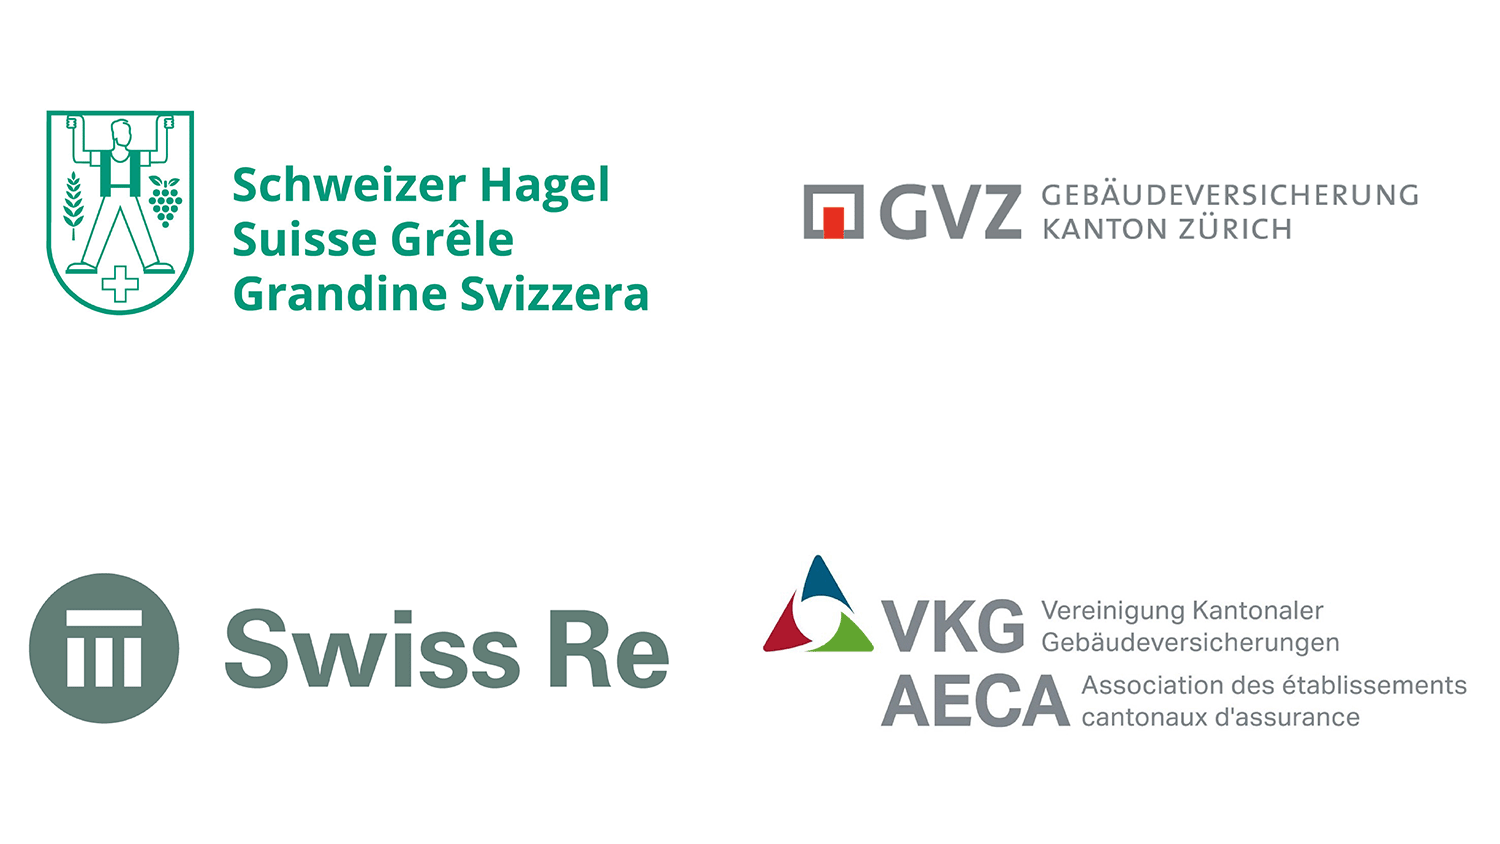 Logos of Schweizer Hagel, Gebäudeversicherung Kanton Zürich, SwissRe, and Vereinigung Kantonaler Gebäudeversicherungen